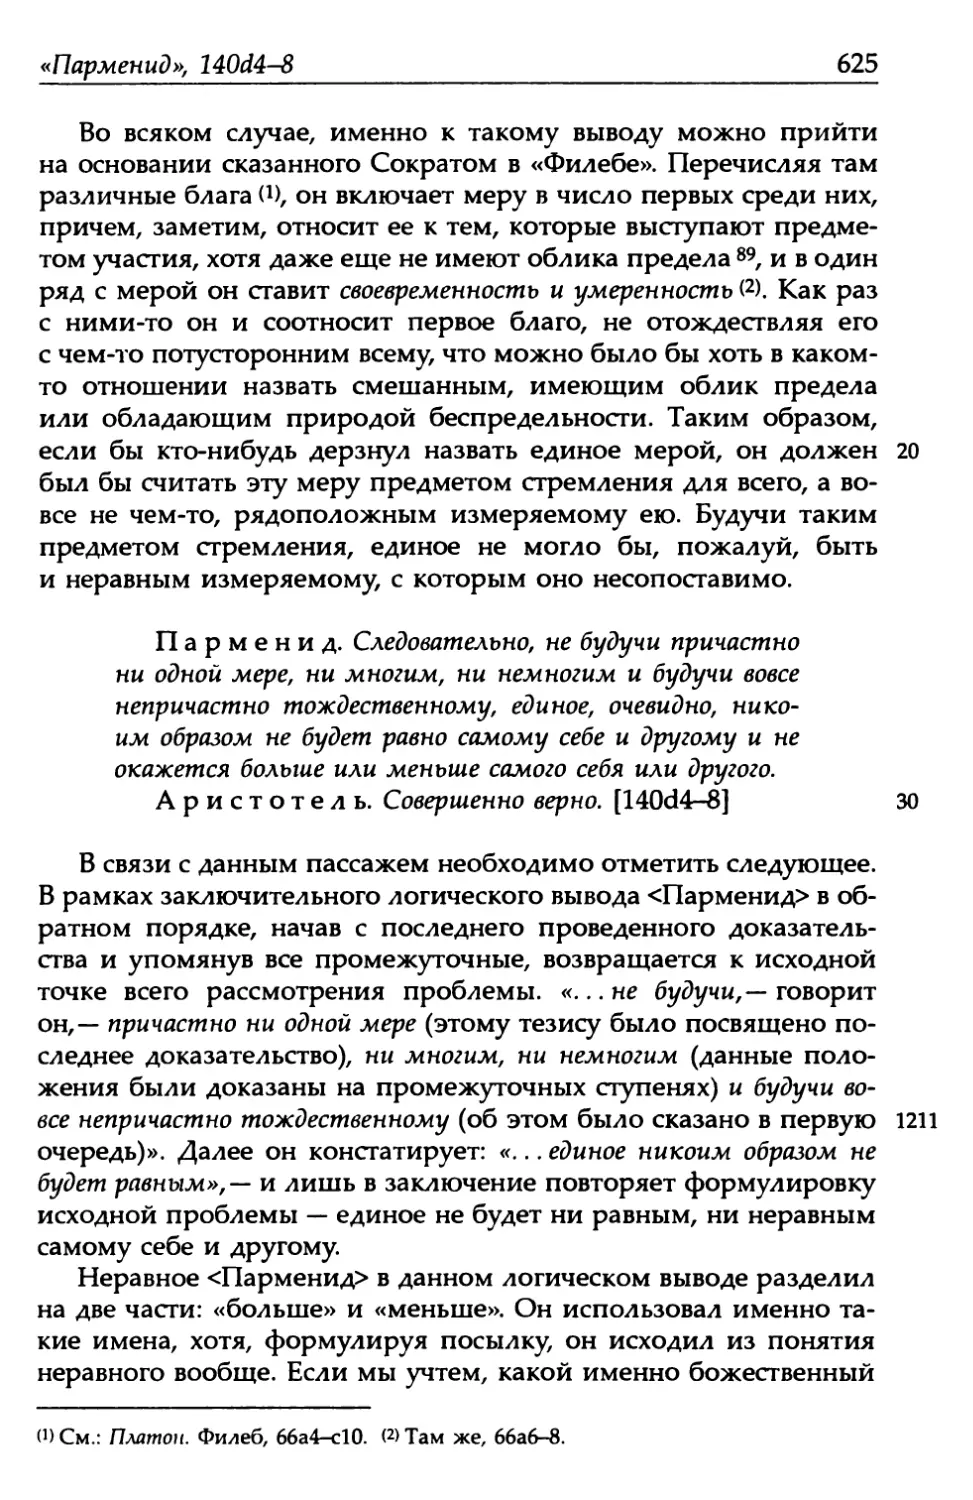 «Парменид», 140d4-8